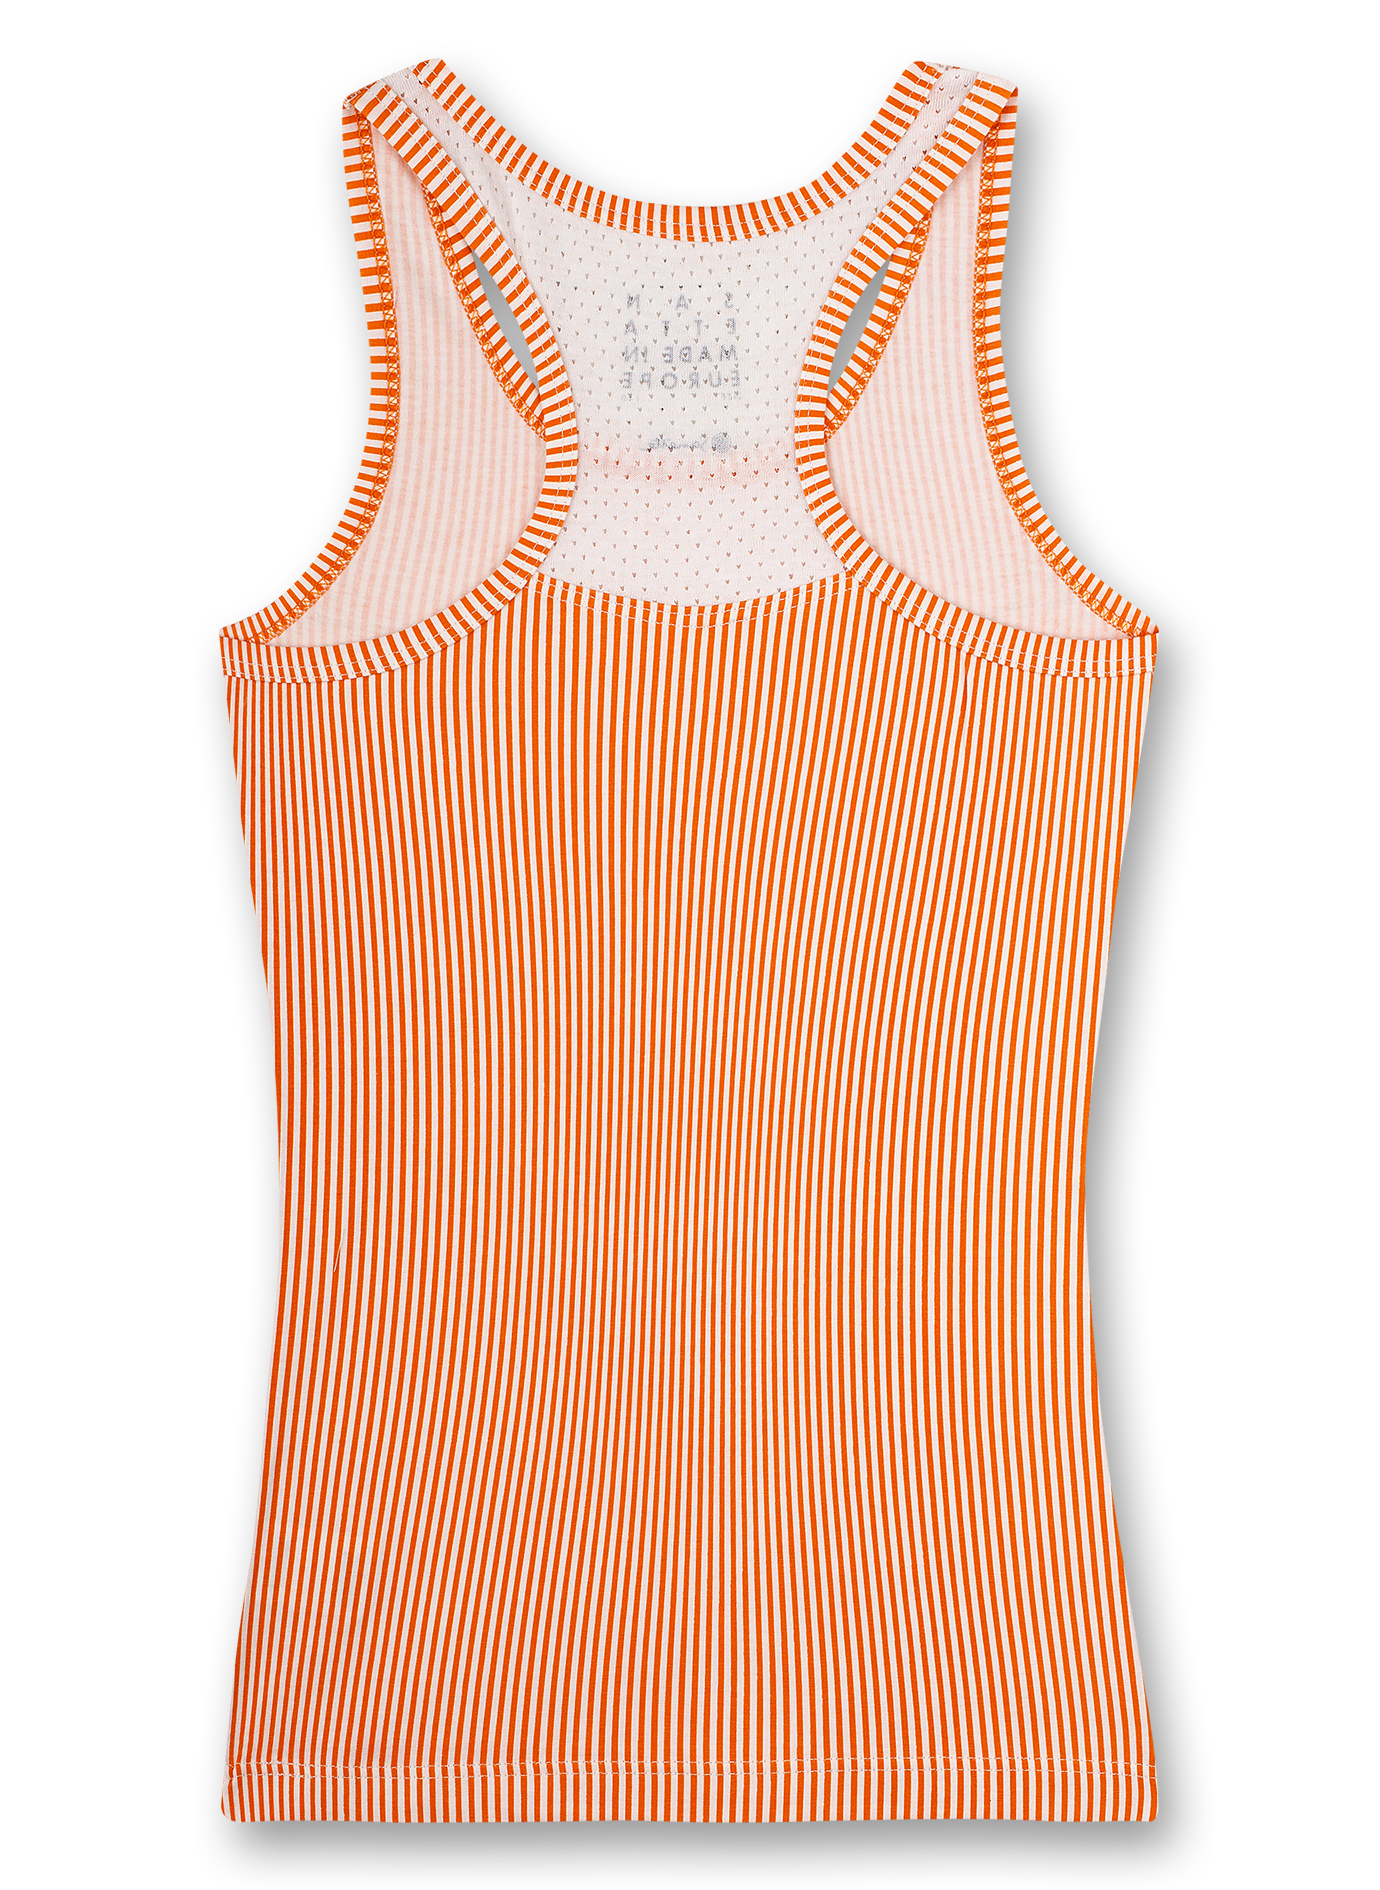 Mädchen-Unterhemd Orange Athleisure Workout